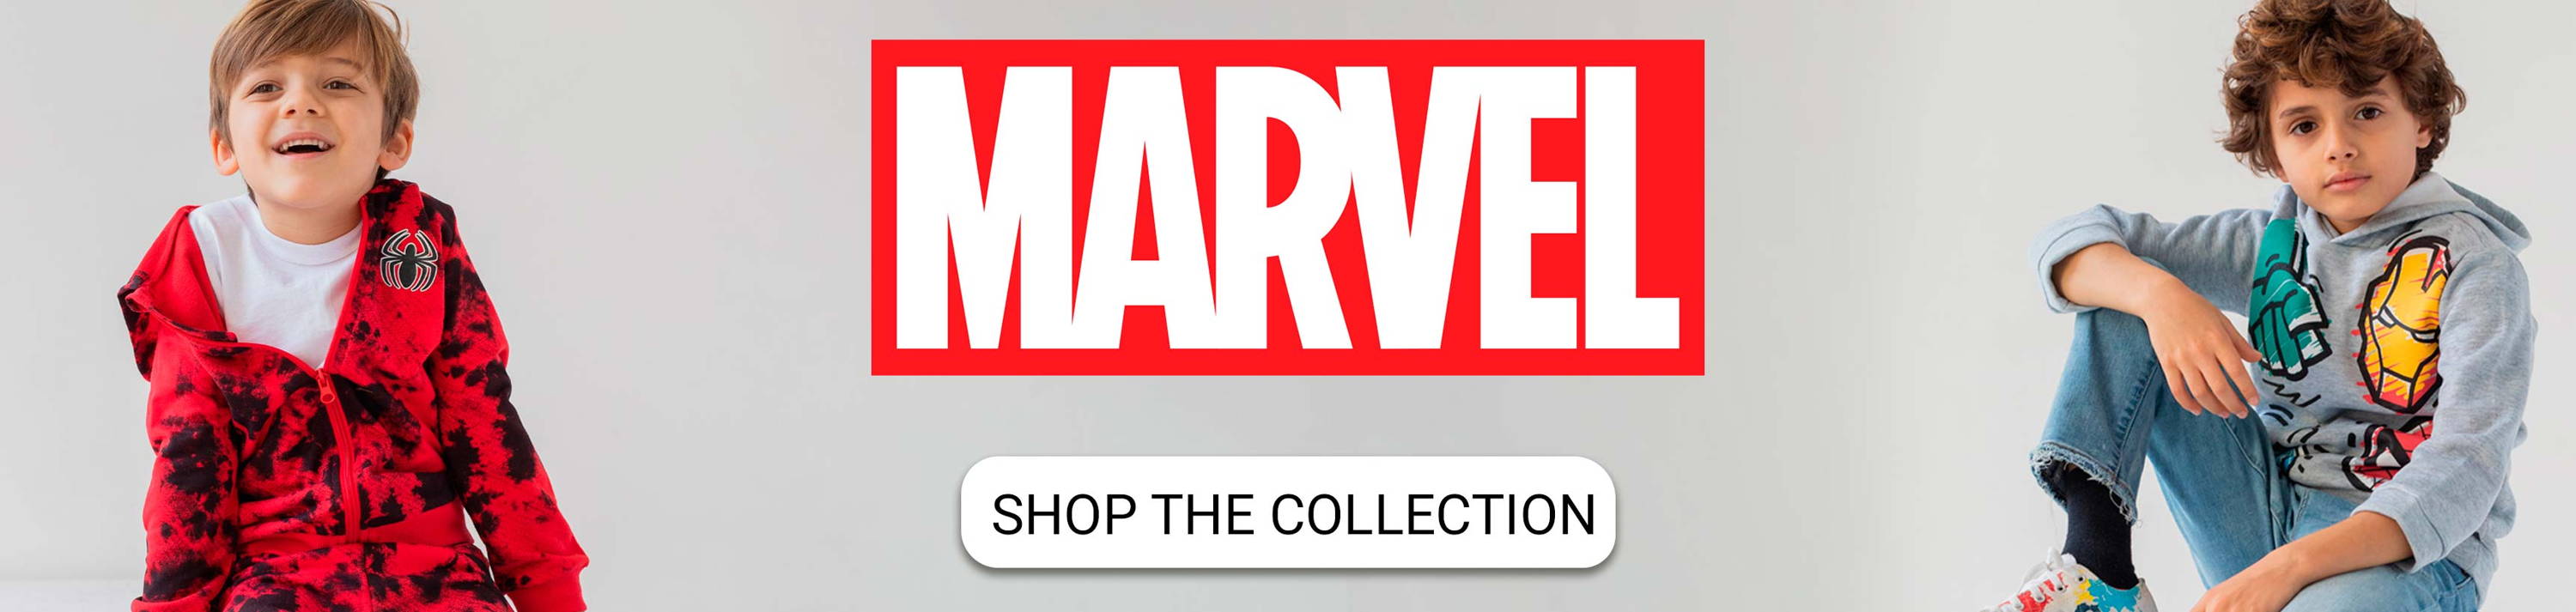 Colección Marvel de imagikids